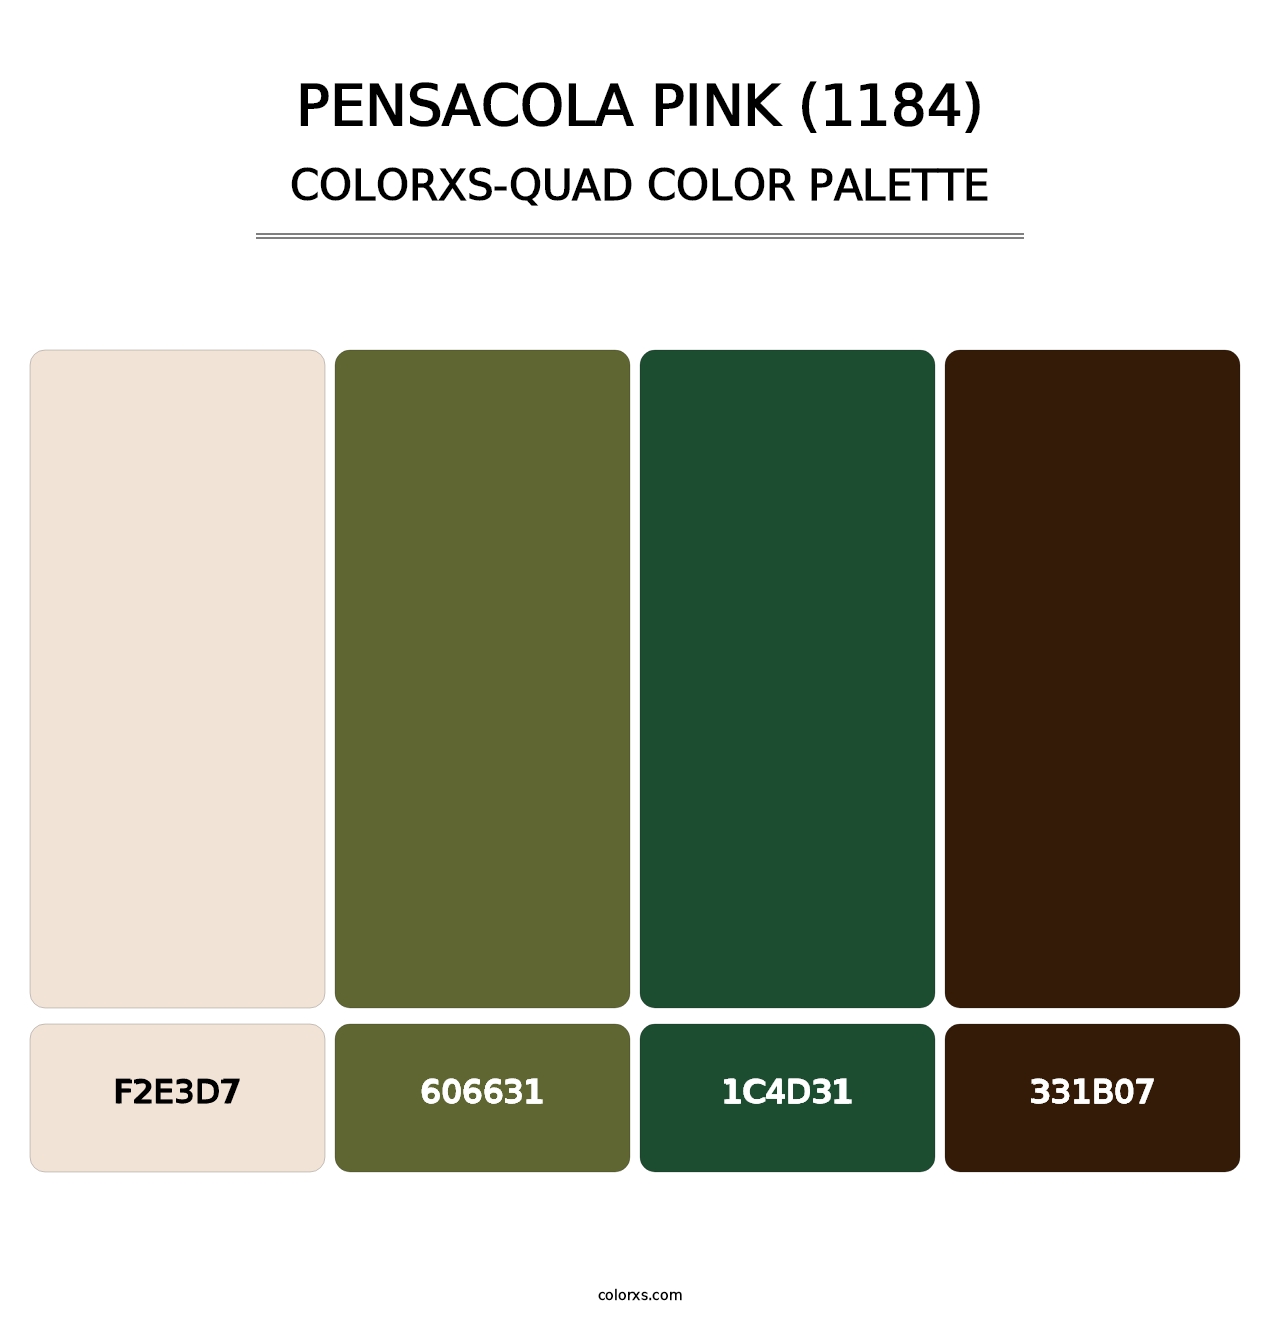 Pensacola Pink (1184) - Colorxs Quad Palette